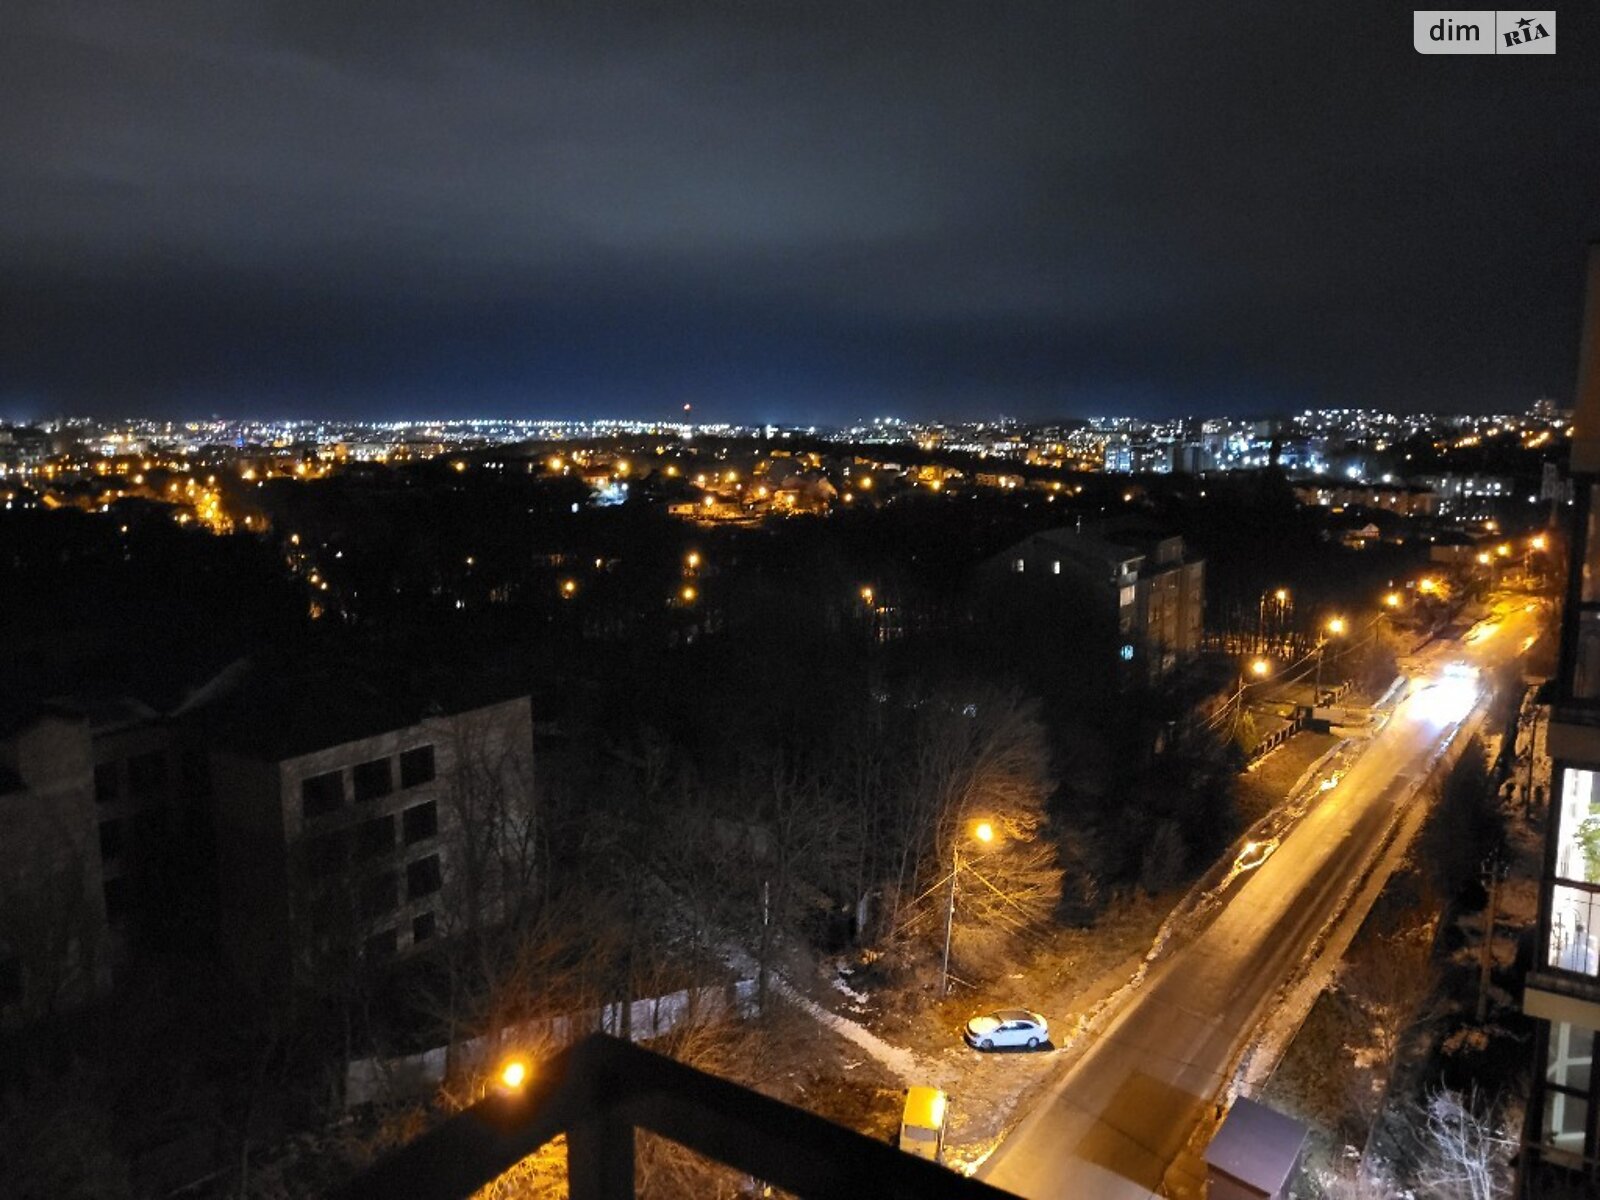 Продажа двухкомнатной квартиры в Тернополе, на ул. Петра Батьковского, район Кутковцы фото 1